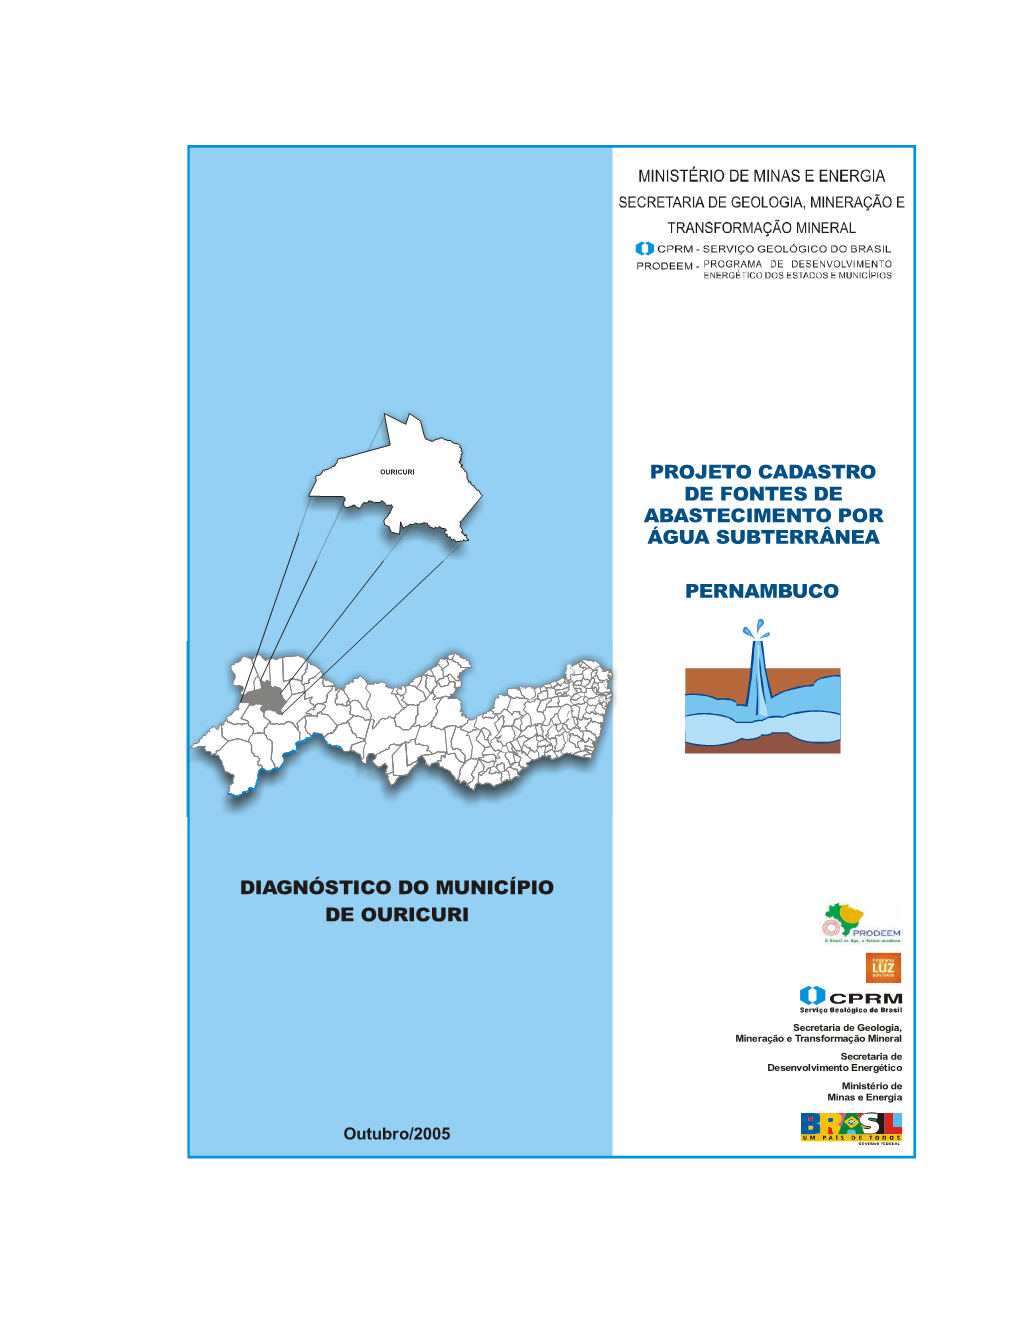 Diagnóstico Do Município De Ouricuri Pernambuco Projeto Cadastro De Fontes De Abastecimento Por Água Subterrânea